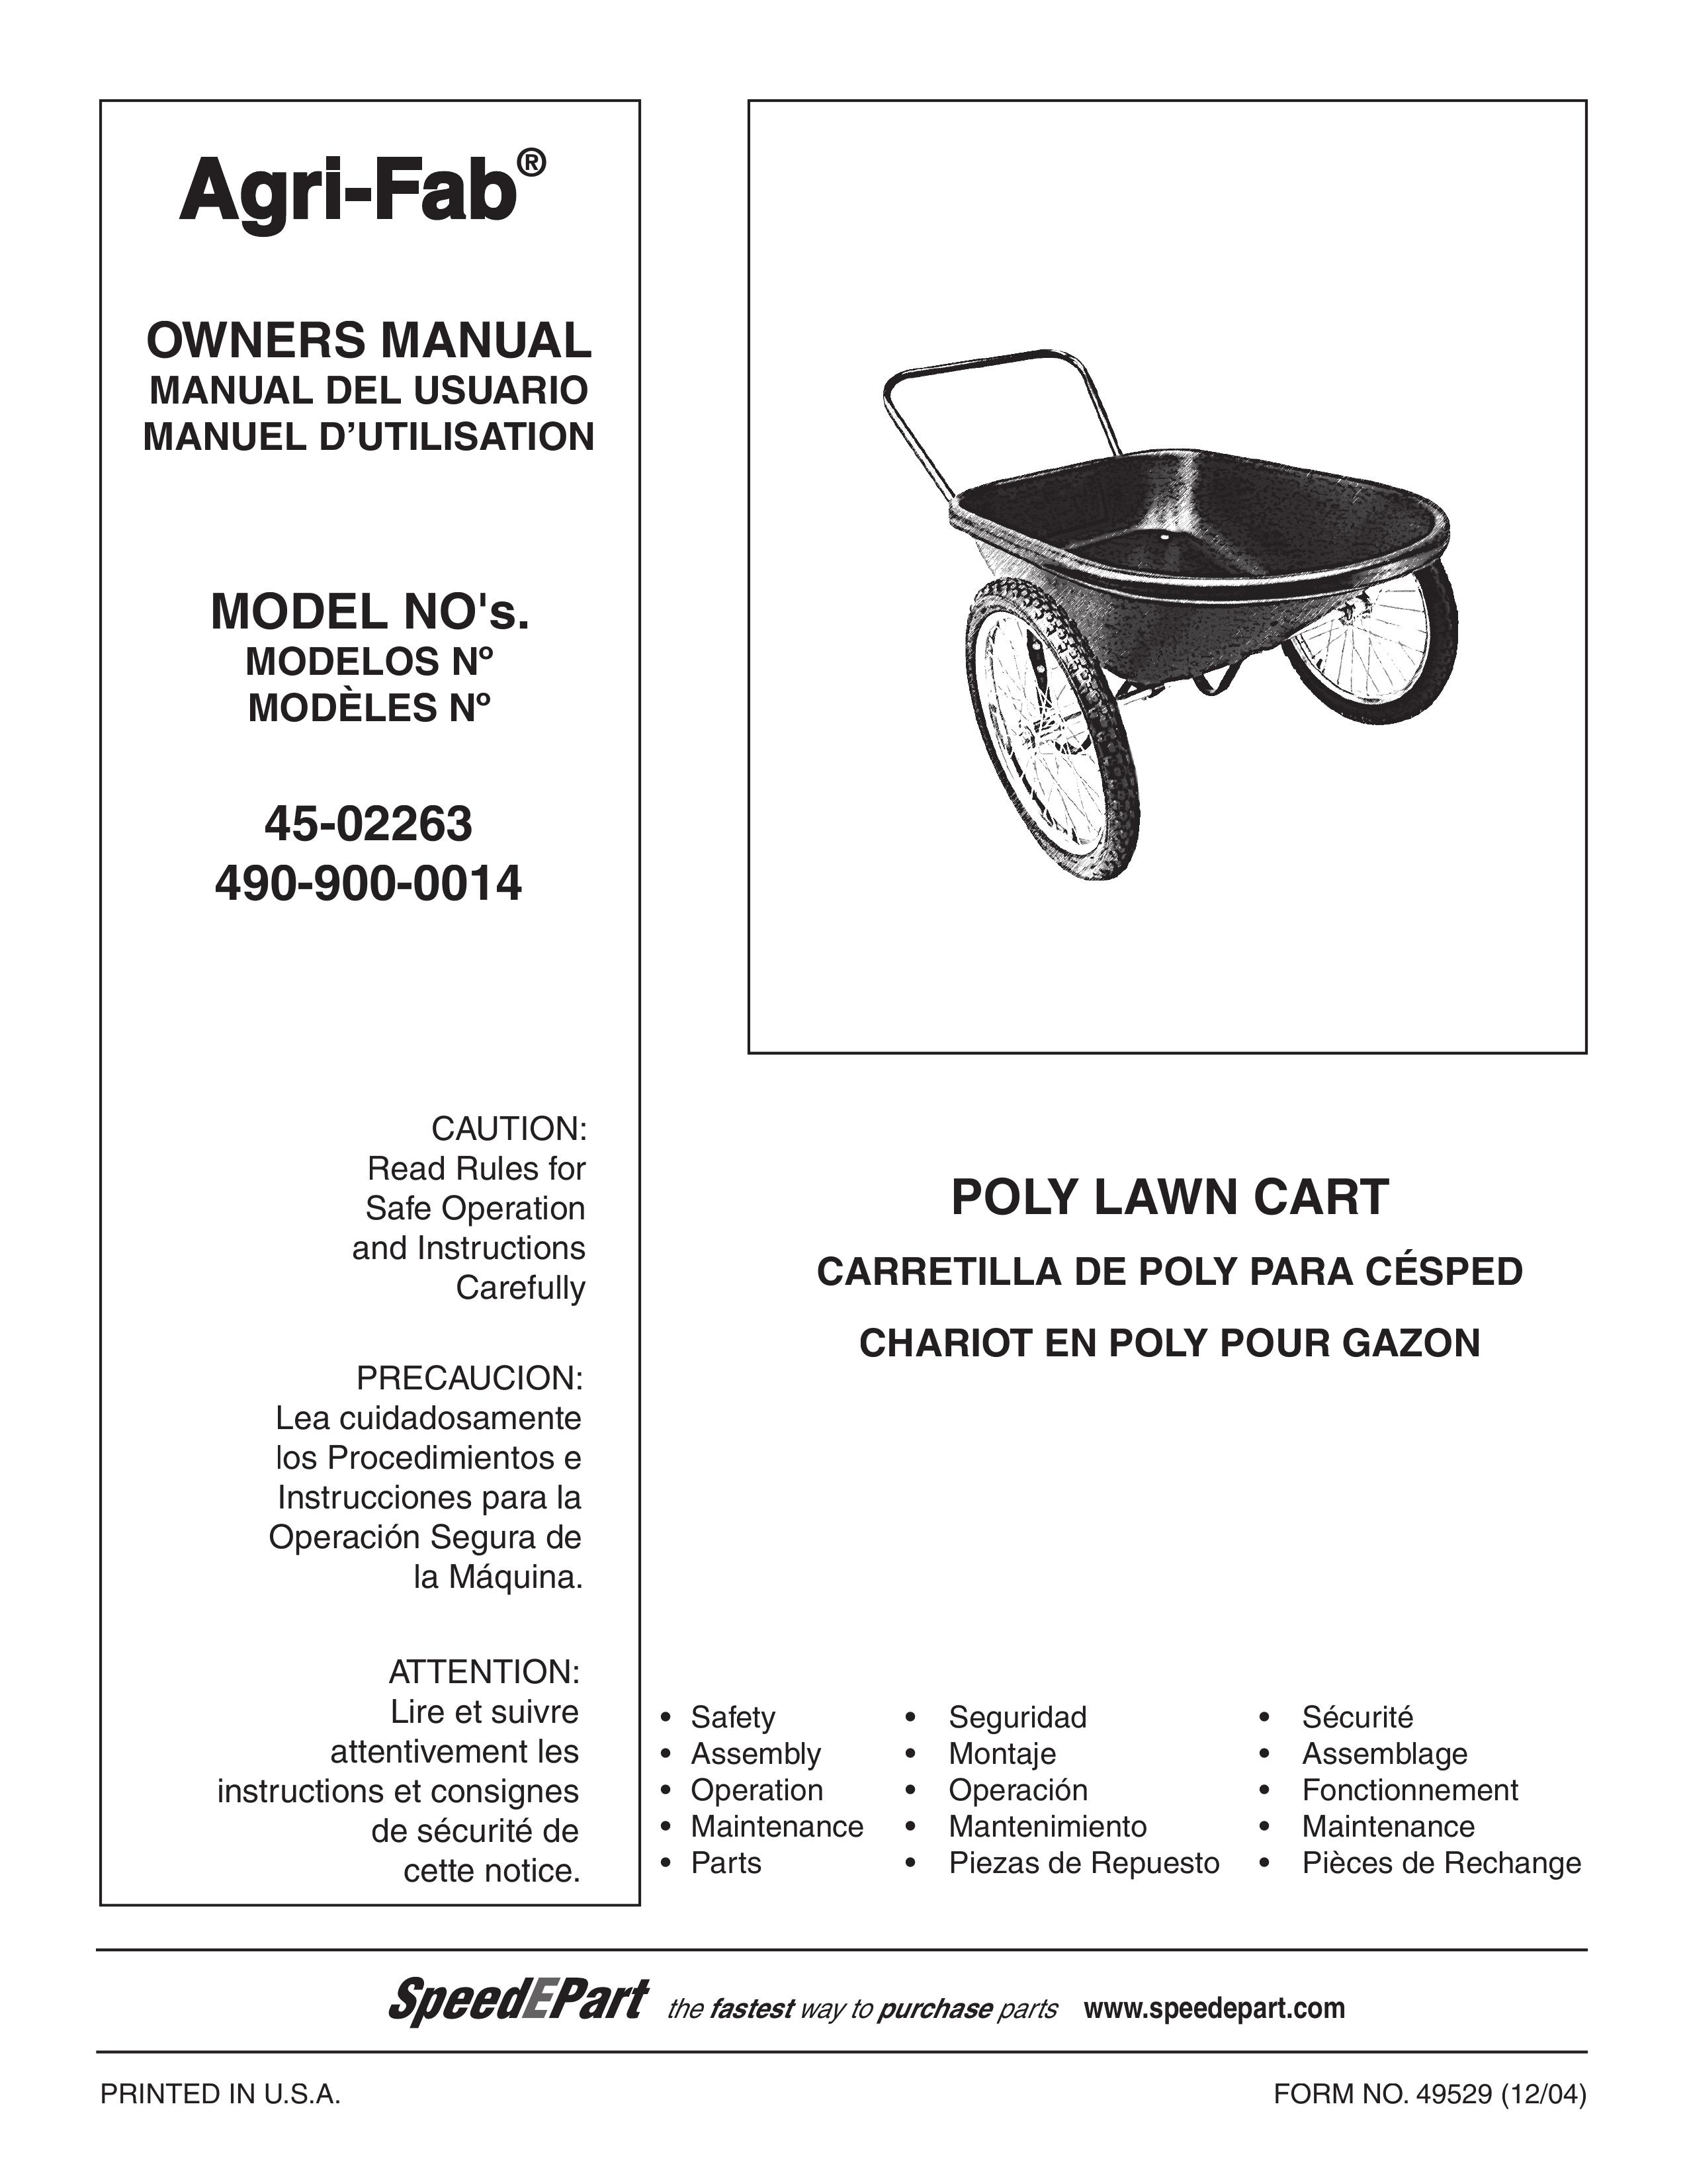 Agri-Fab 490-900-0014 Outdoor Cart User Manual